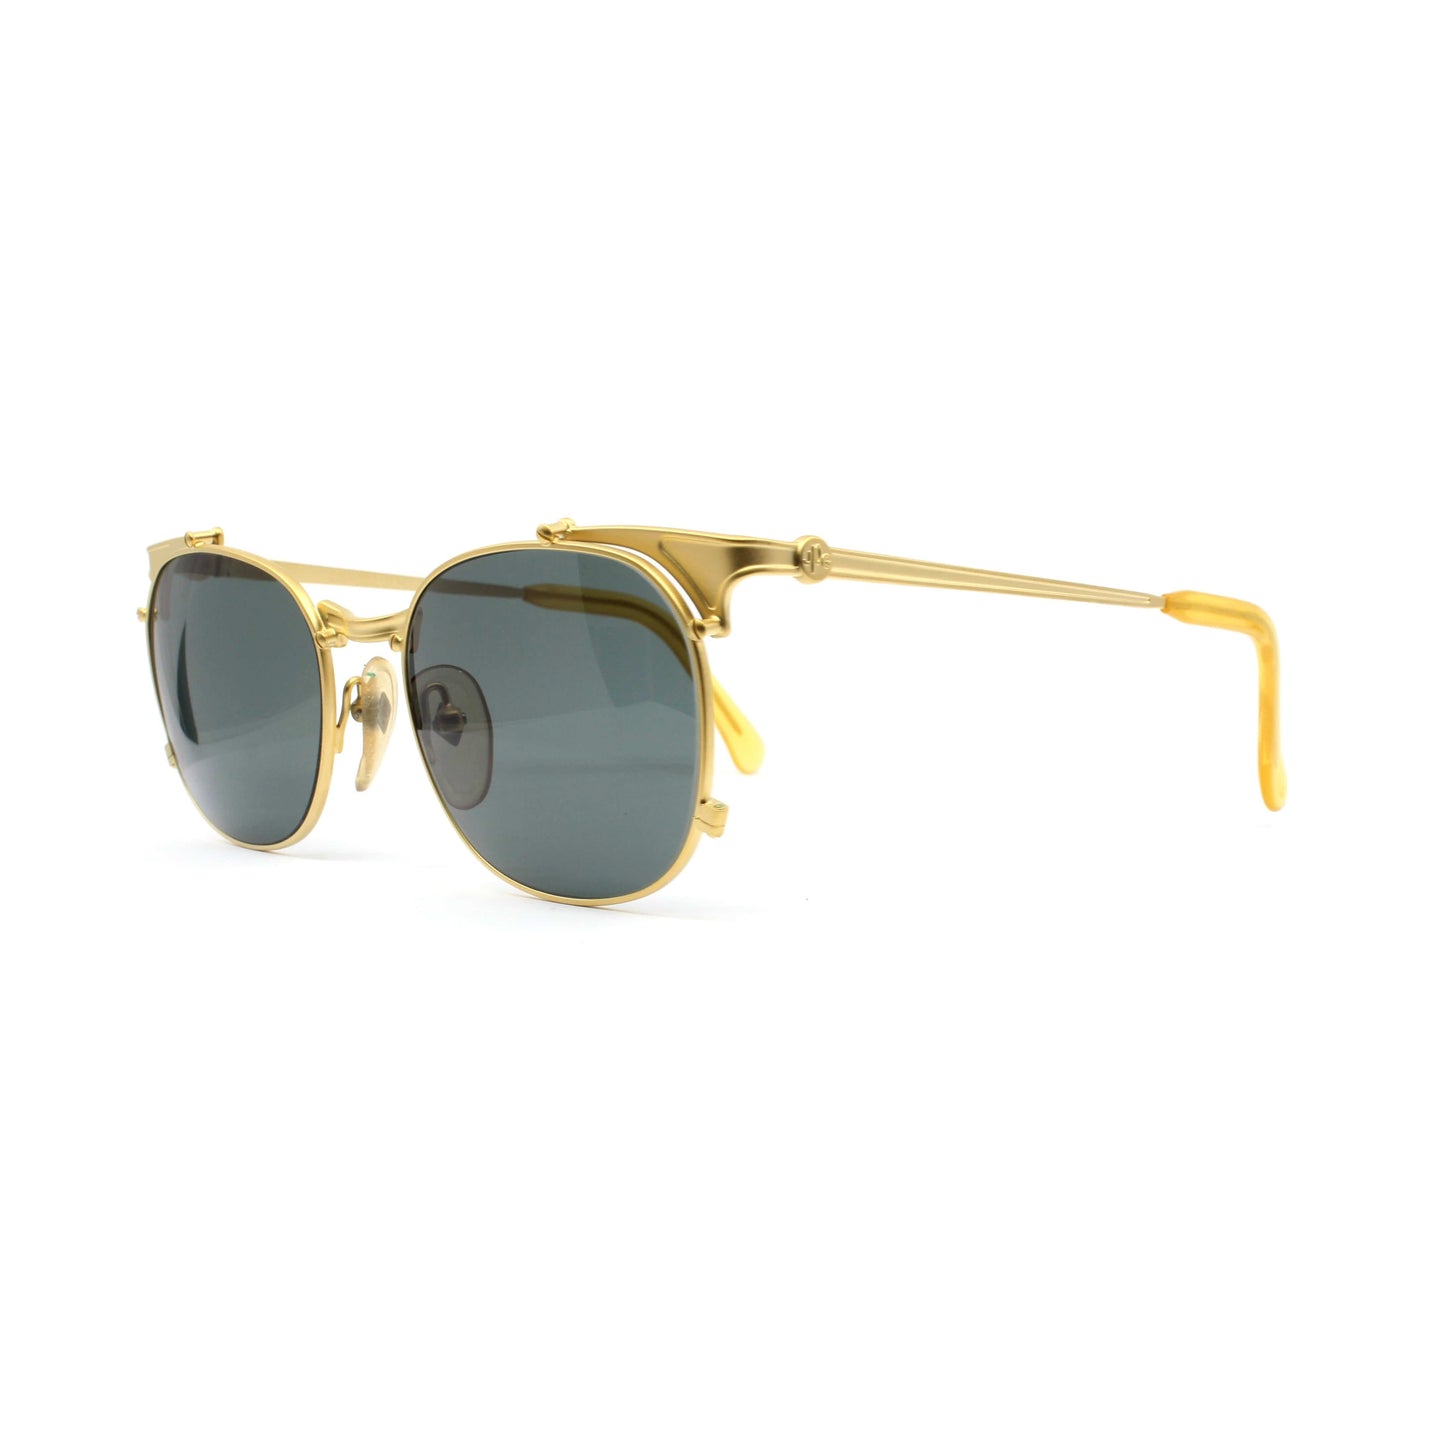 Gold Vintage Jean Paul Gaultier 56-2175 Sunglasses RSTKD Vintage